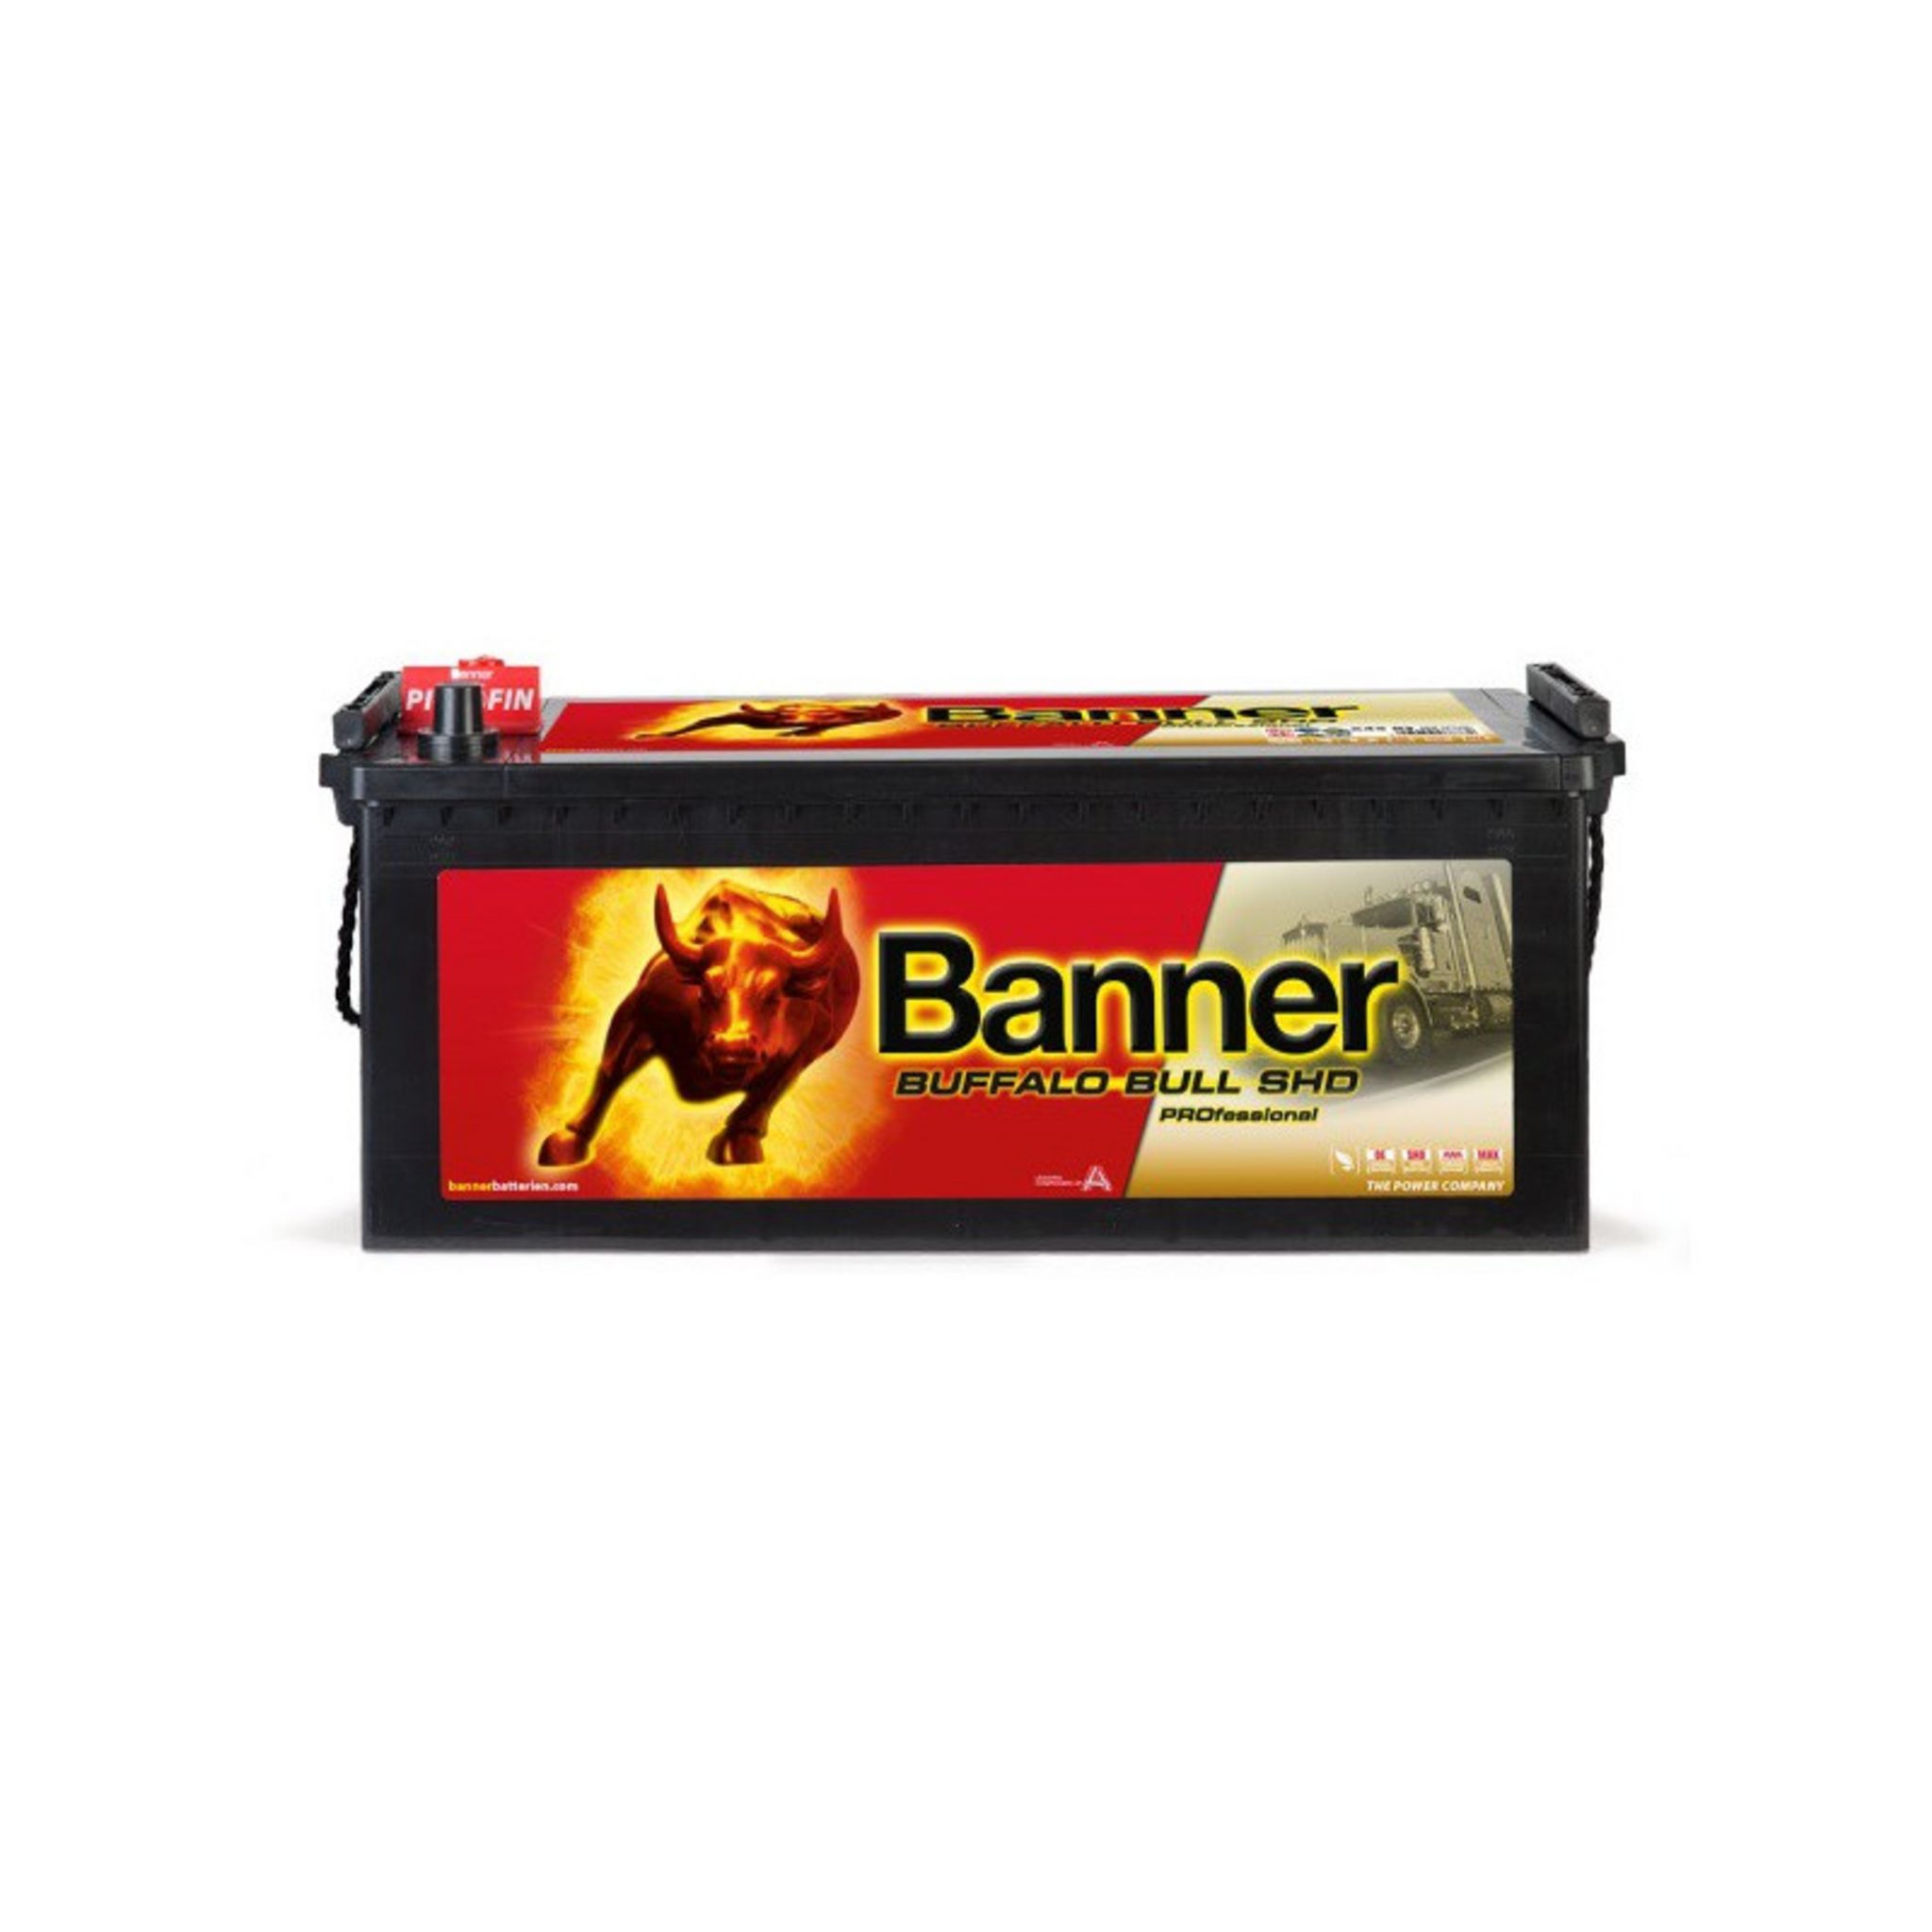 BANNER PRO P10040 Power Bull Professional Autobatterie Batterie 12V 100Ah 